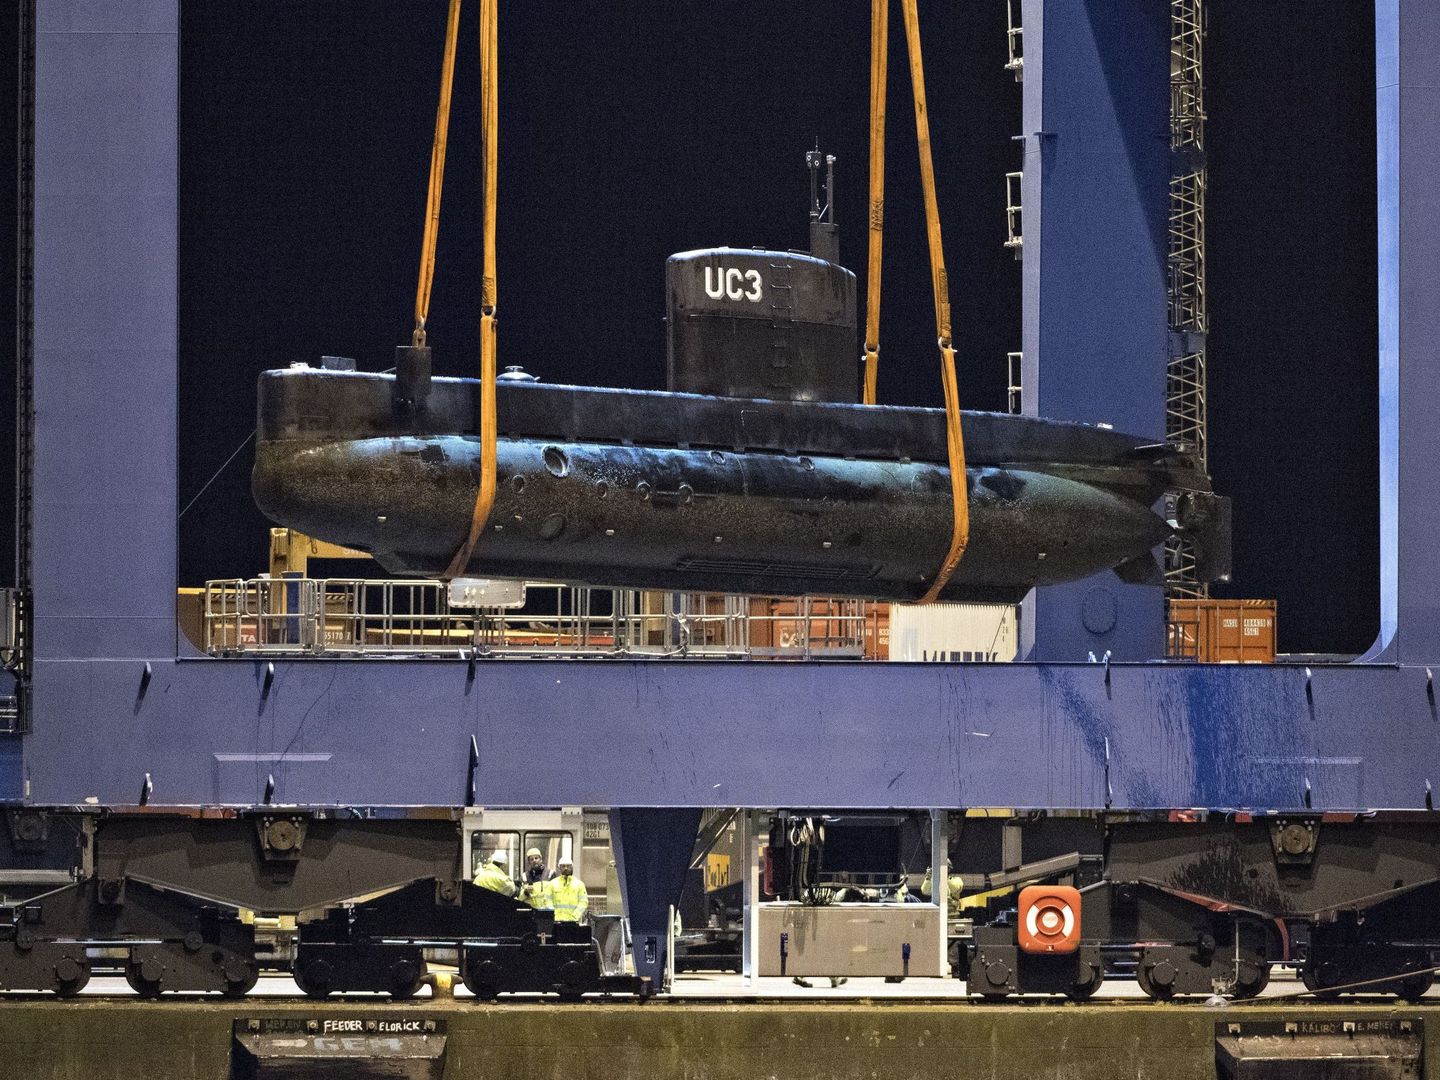 El UC3 Nautilus se hizo famoso en 2008 por ser el submarino privado más grande del mundo. (EFE)